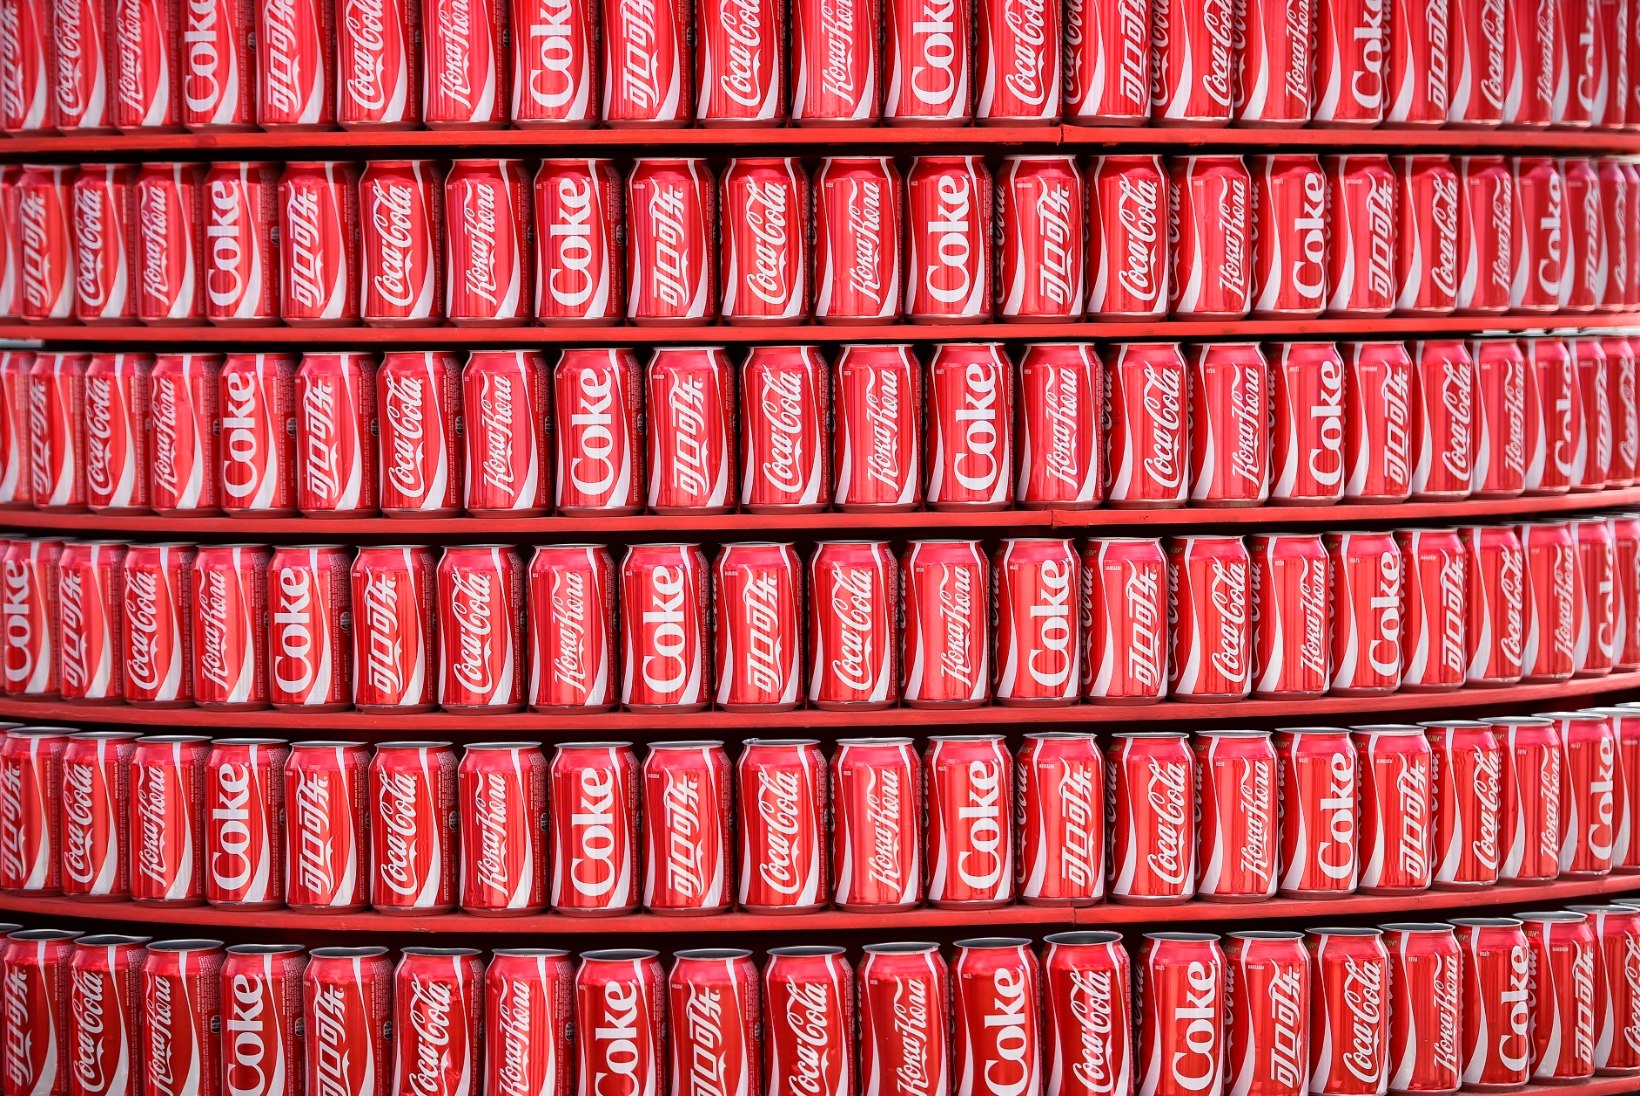 Millised varjatud mõjud on Coca-Colal su kehale?